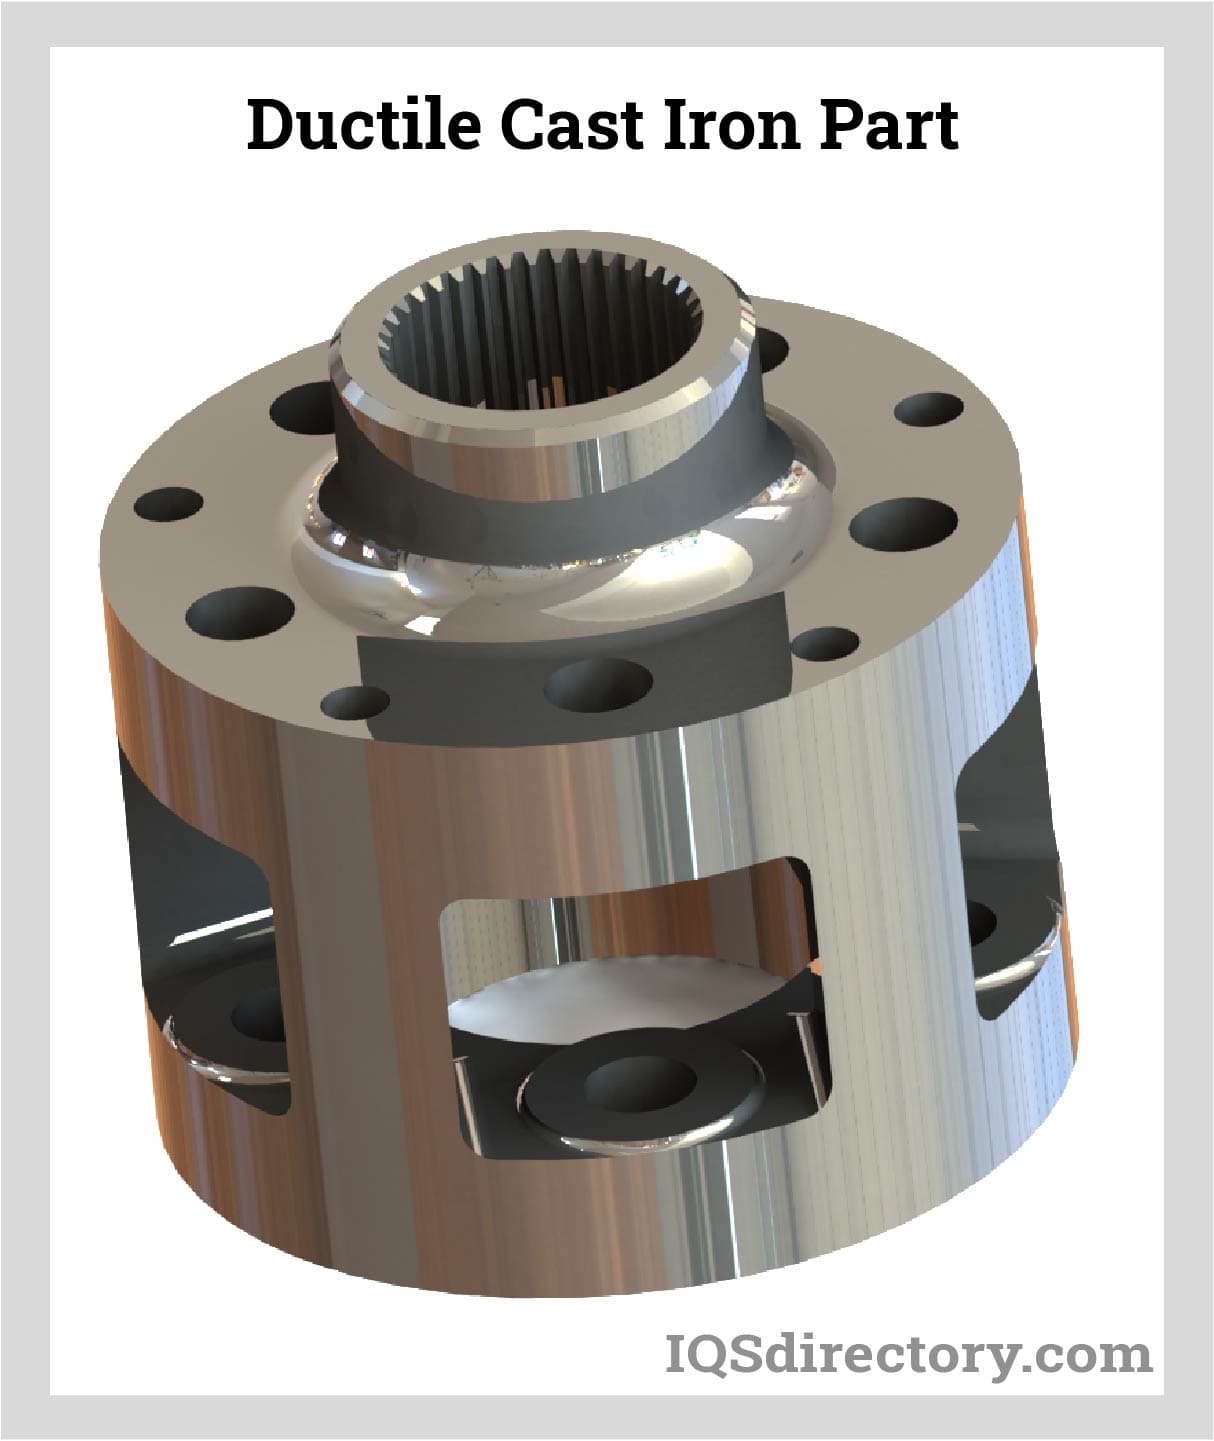 Ductile Cast Iron Part